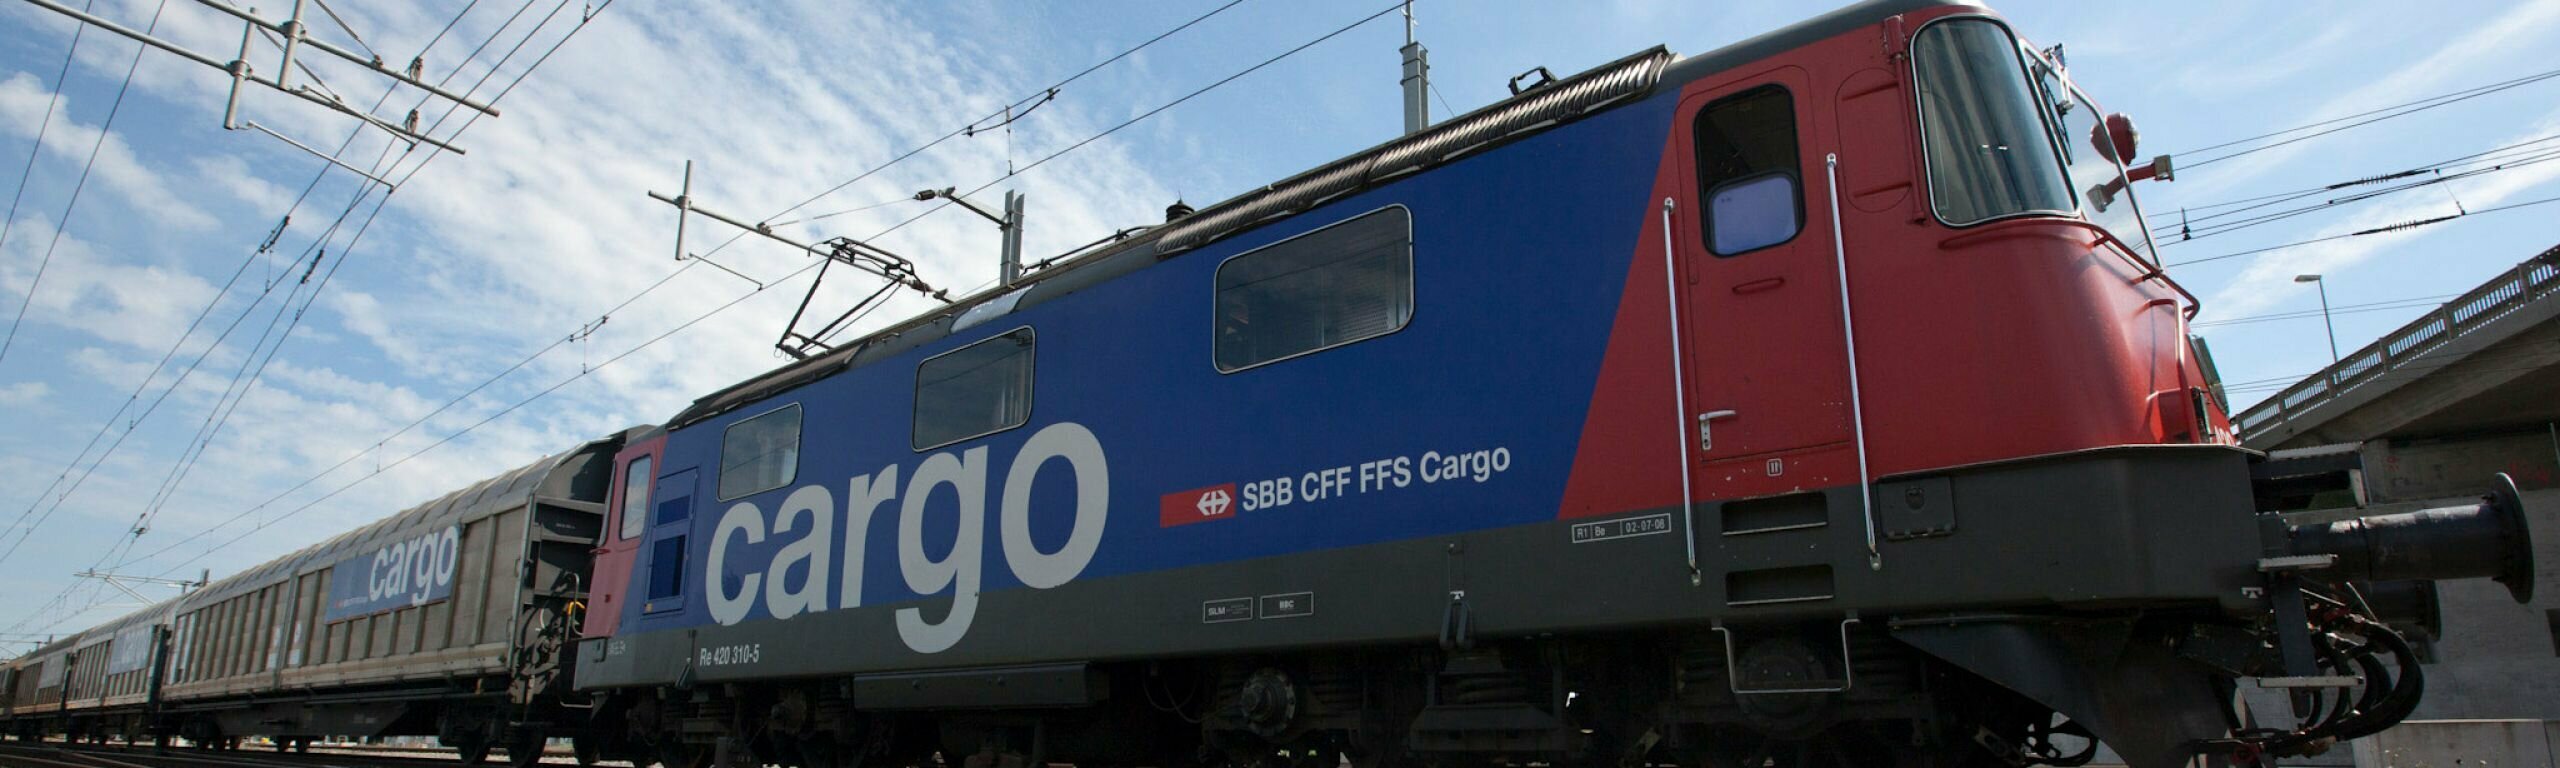 Interesse an Partnerschaft mit SBB Cargo übertrifft Erwartungen